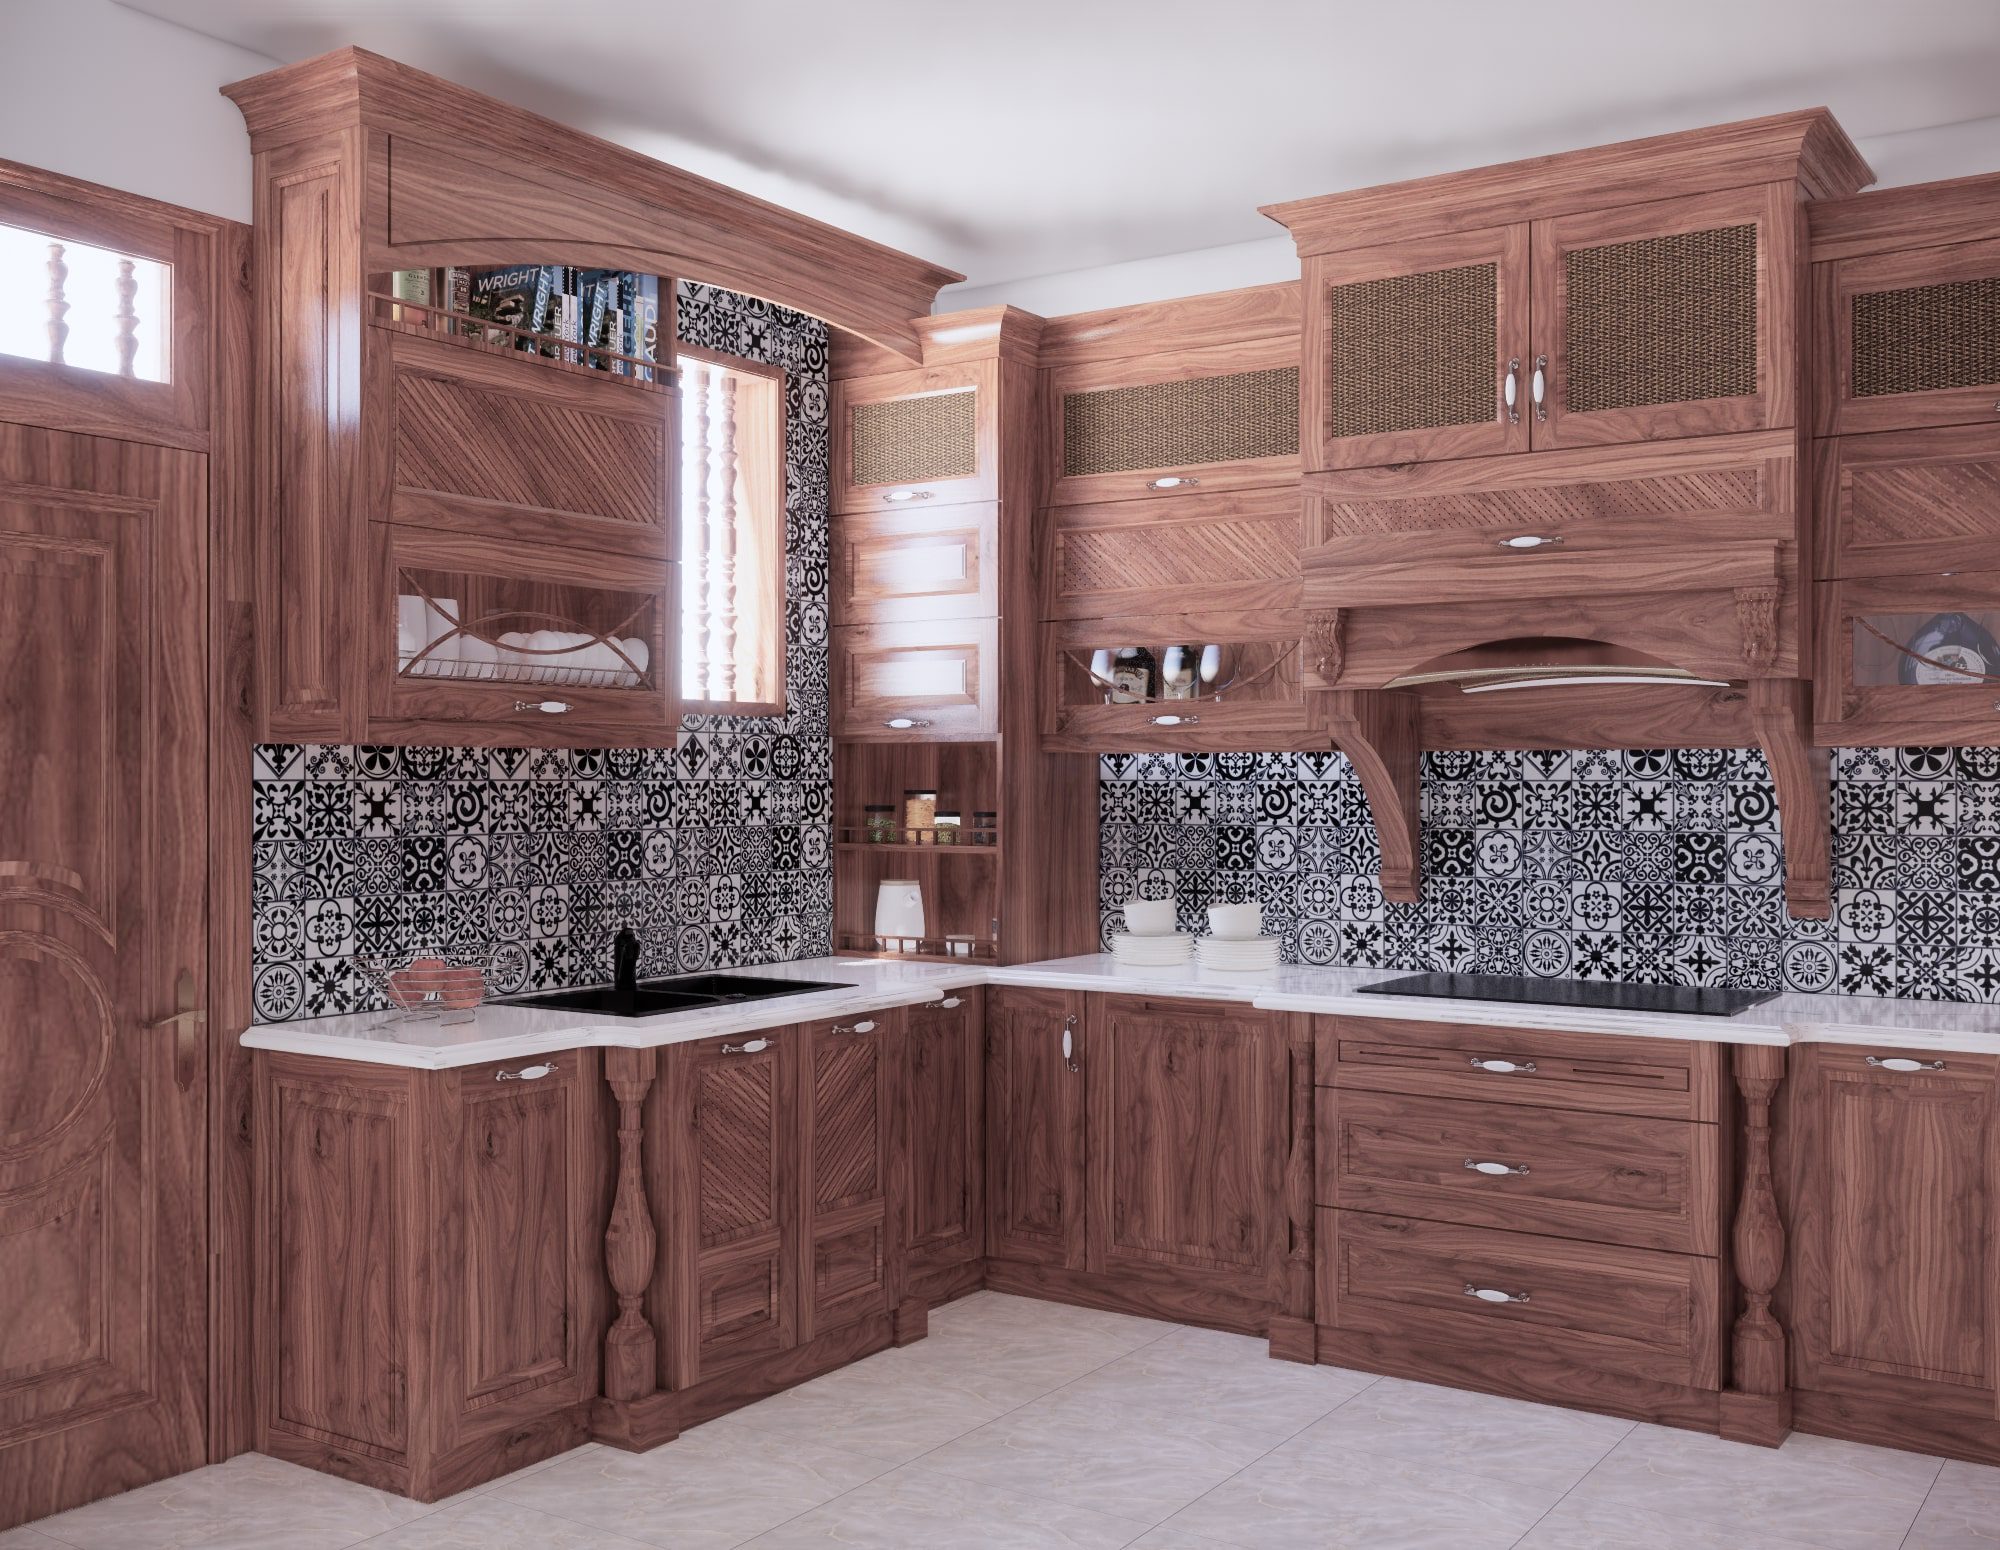 Tại sao nên chọn tủ bếp gỗ óc chó cho căn bếp của gia đình?, tủ bếp gỗ tự nhiên, gỗ Sồi Mỹ